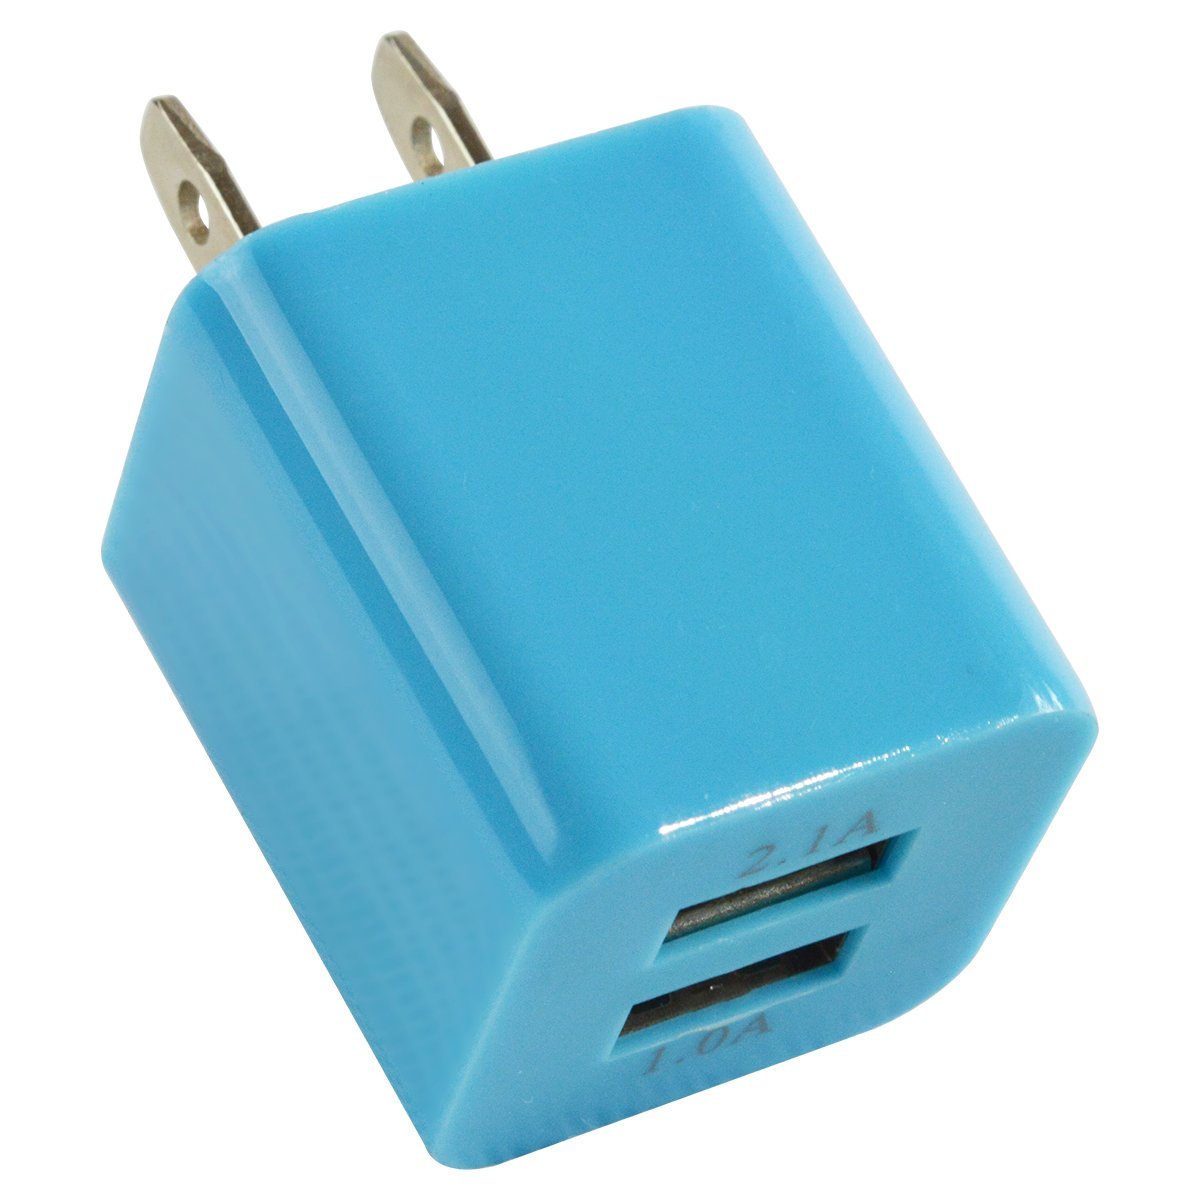 スマートフォン 充電器 ACアダプター USBポート 2口 2.1A 水色 iphone スマホ 充電 USB2ポート コンセント コネクター 